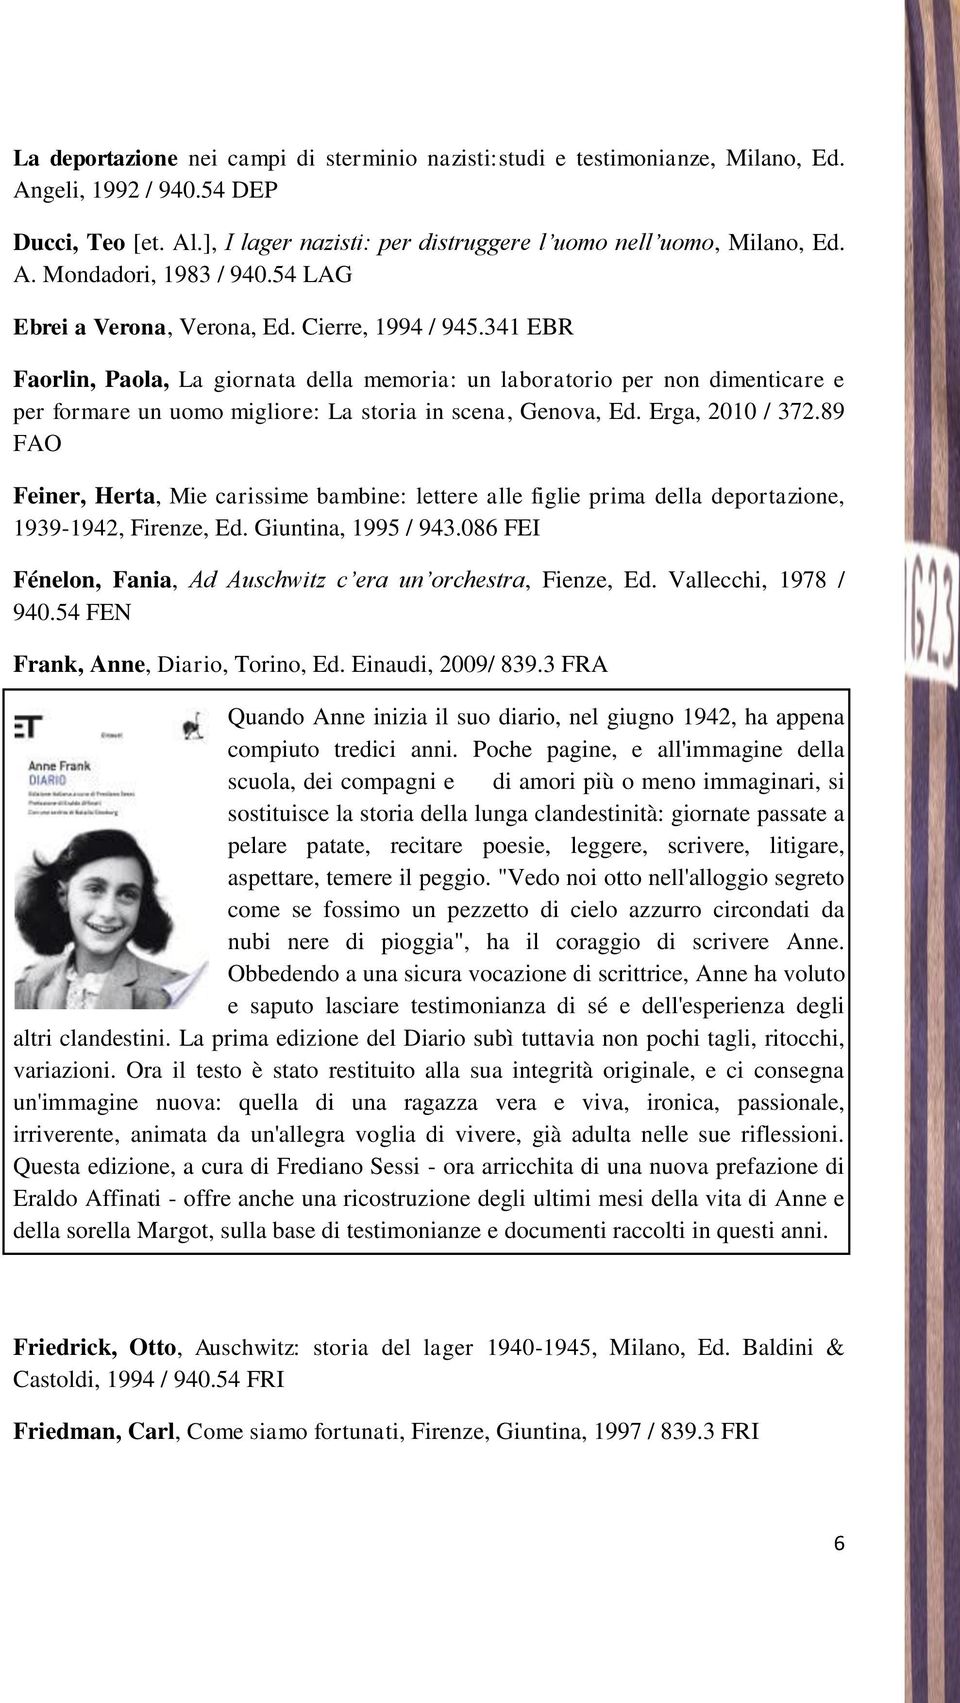 341 EBR Faorlin, Paola, La giornata della memoria: un laboratorio per non dimenticare e per formare un uomo migliore: La storia in scena, Genova, Ed. Erga, 2010 / 372.